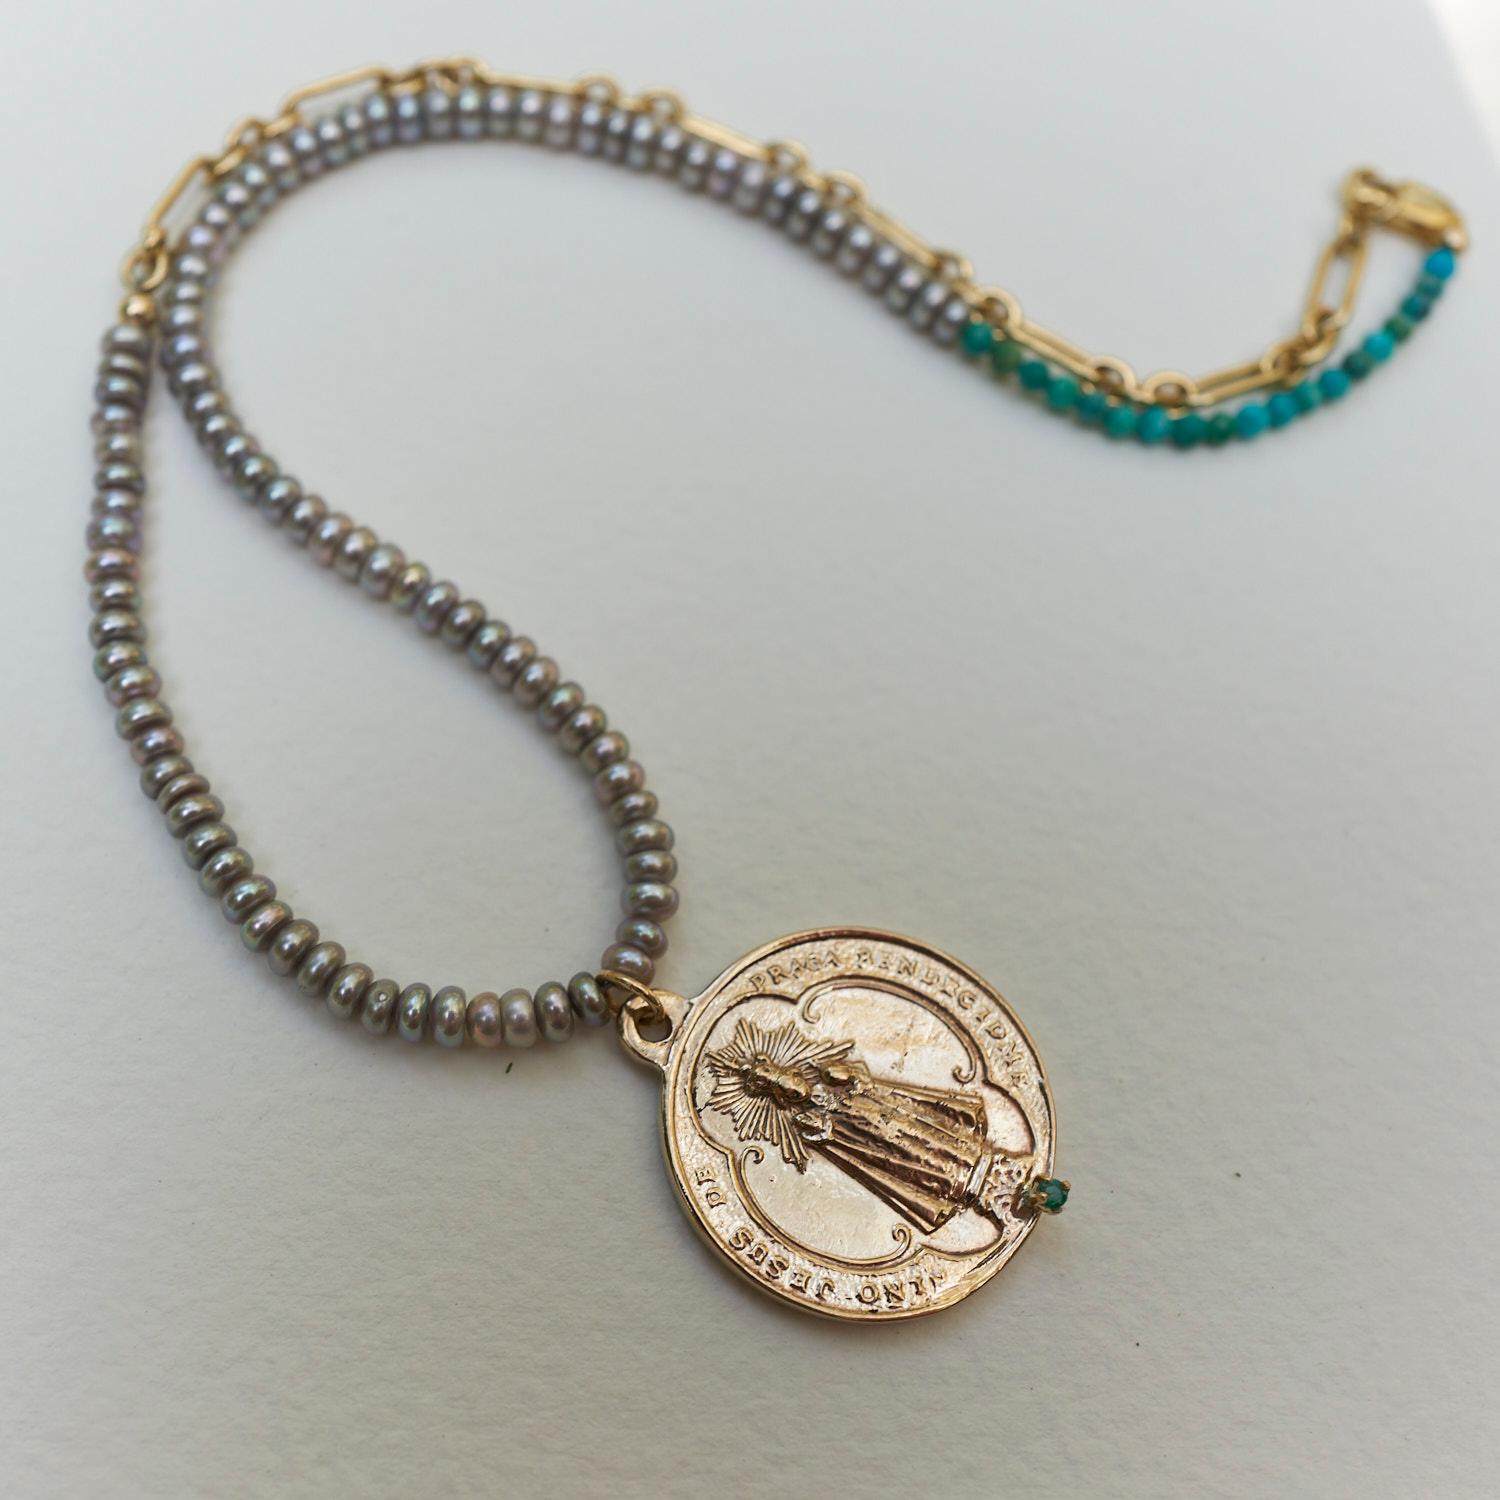 Smaragd Medaille Choker Kette Perlenkette Perle Türkis J Dauphin
Die Münze ist aus Bronze und die Kette ist mit Gold gefüllt und mit Perlen und Türkisen besetzt.

Hergestellt in Los Angeles
Auf Bestellung gefertigt 3-4 Wochen bis zur Fertigstellung
